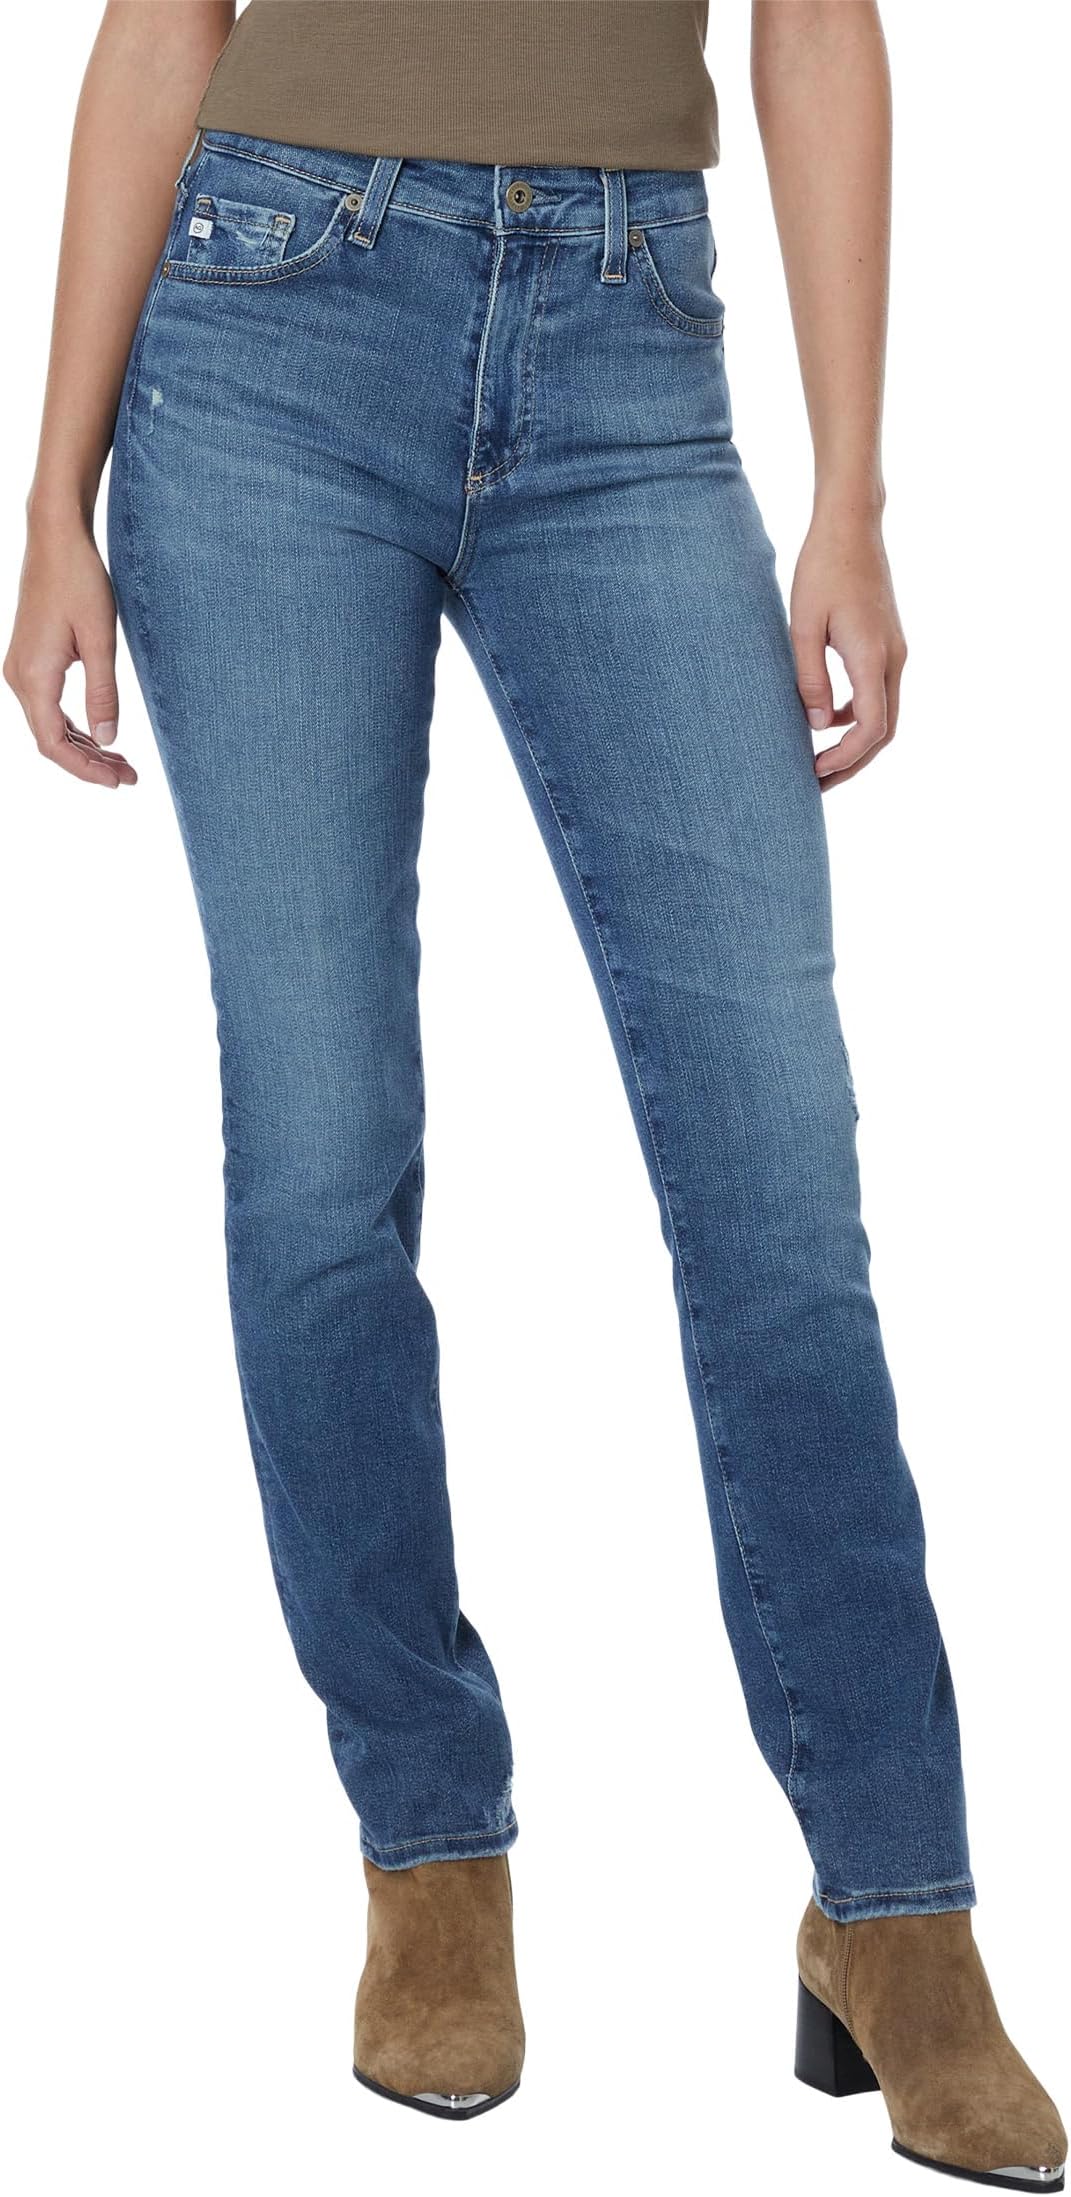 Джинсы Mari High-Waist Slim Straight Leg Jeans in Park Slope AG Jeans, цвет Park Slope